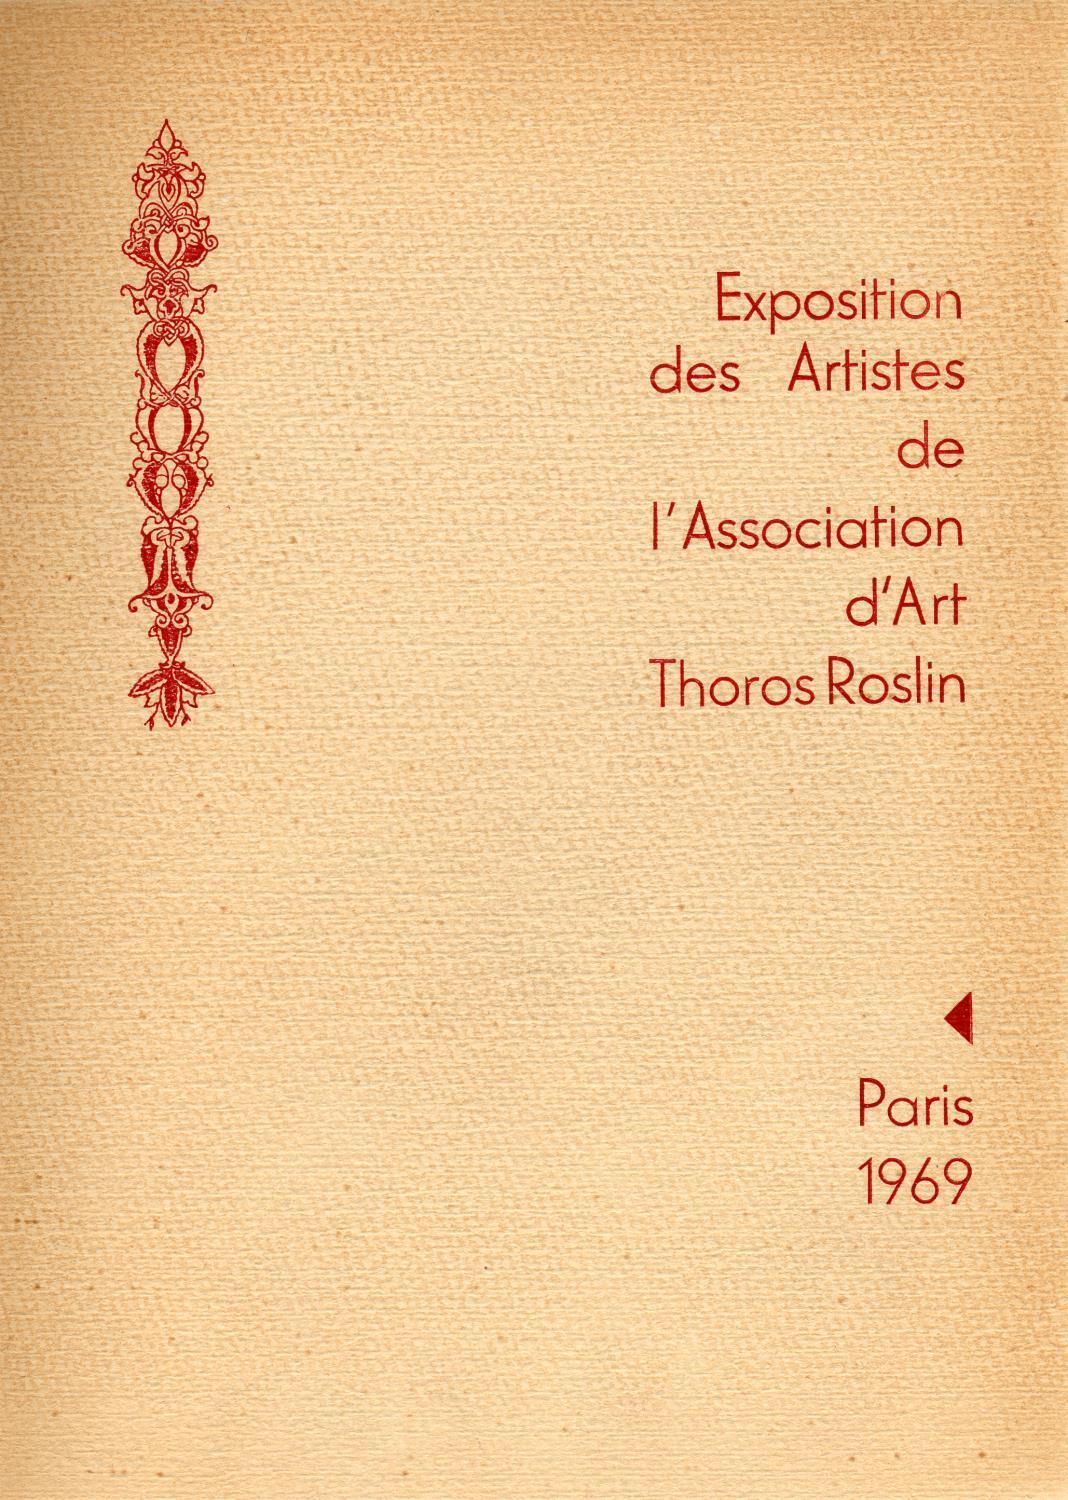 Exposition des Artistes de l'Association d'Art Thoros Roslin